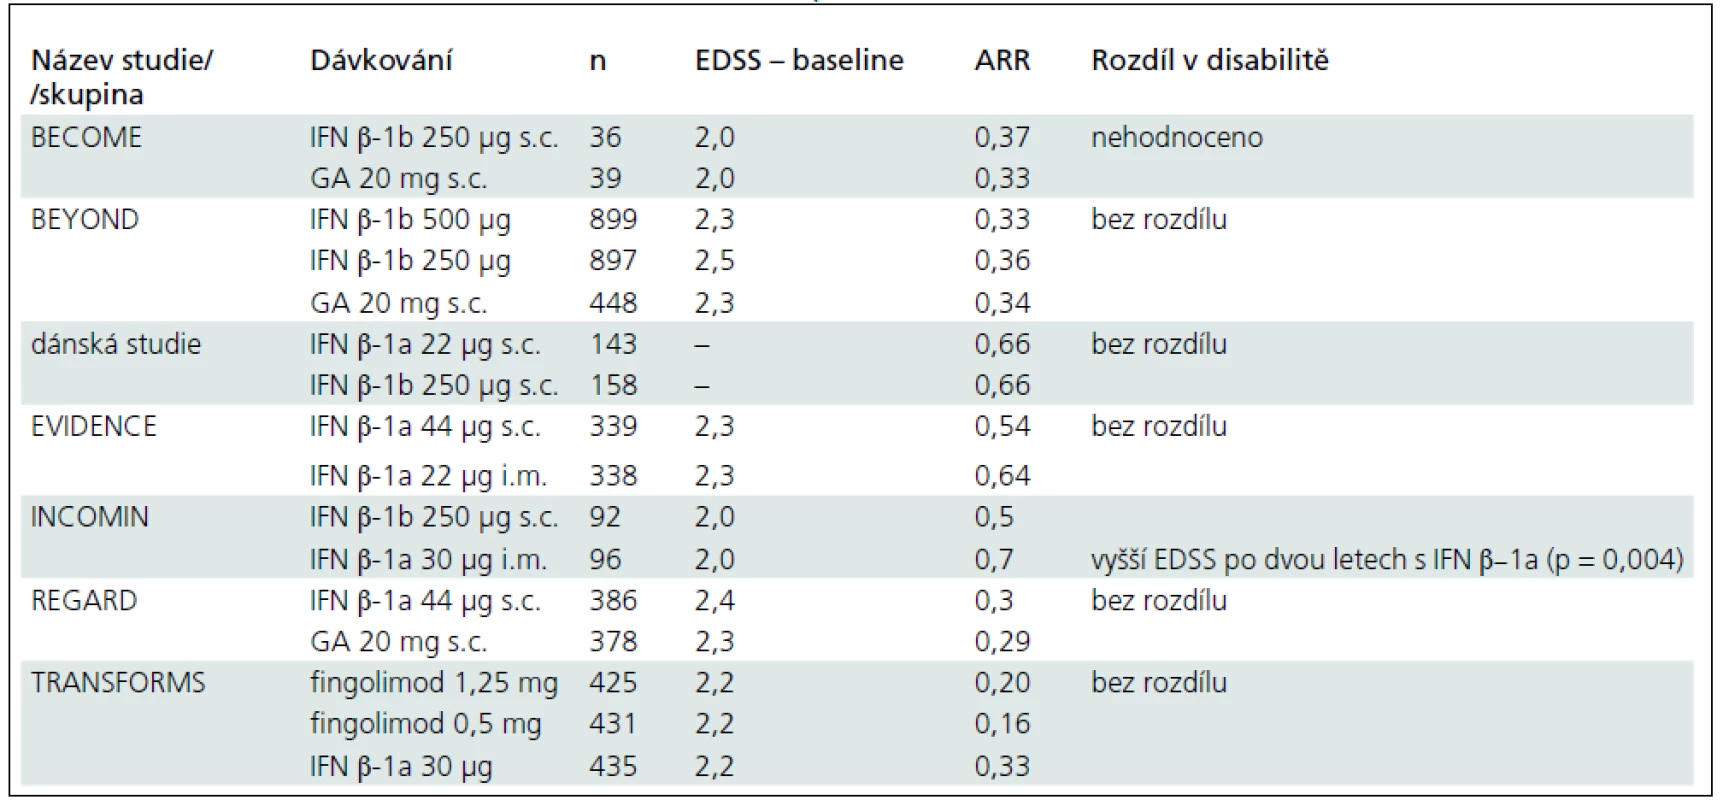 Srovnávací klinické studie u RR-RS s evidencí stupně A.